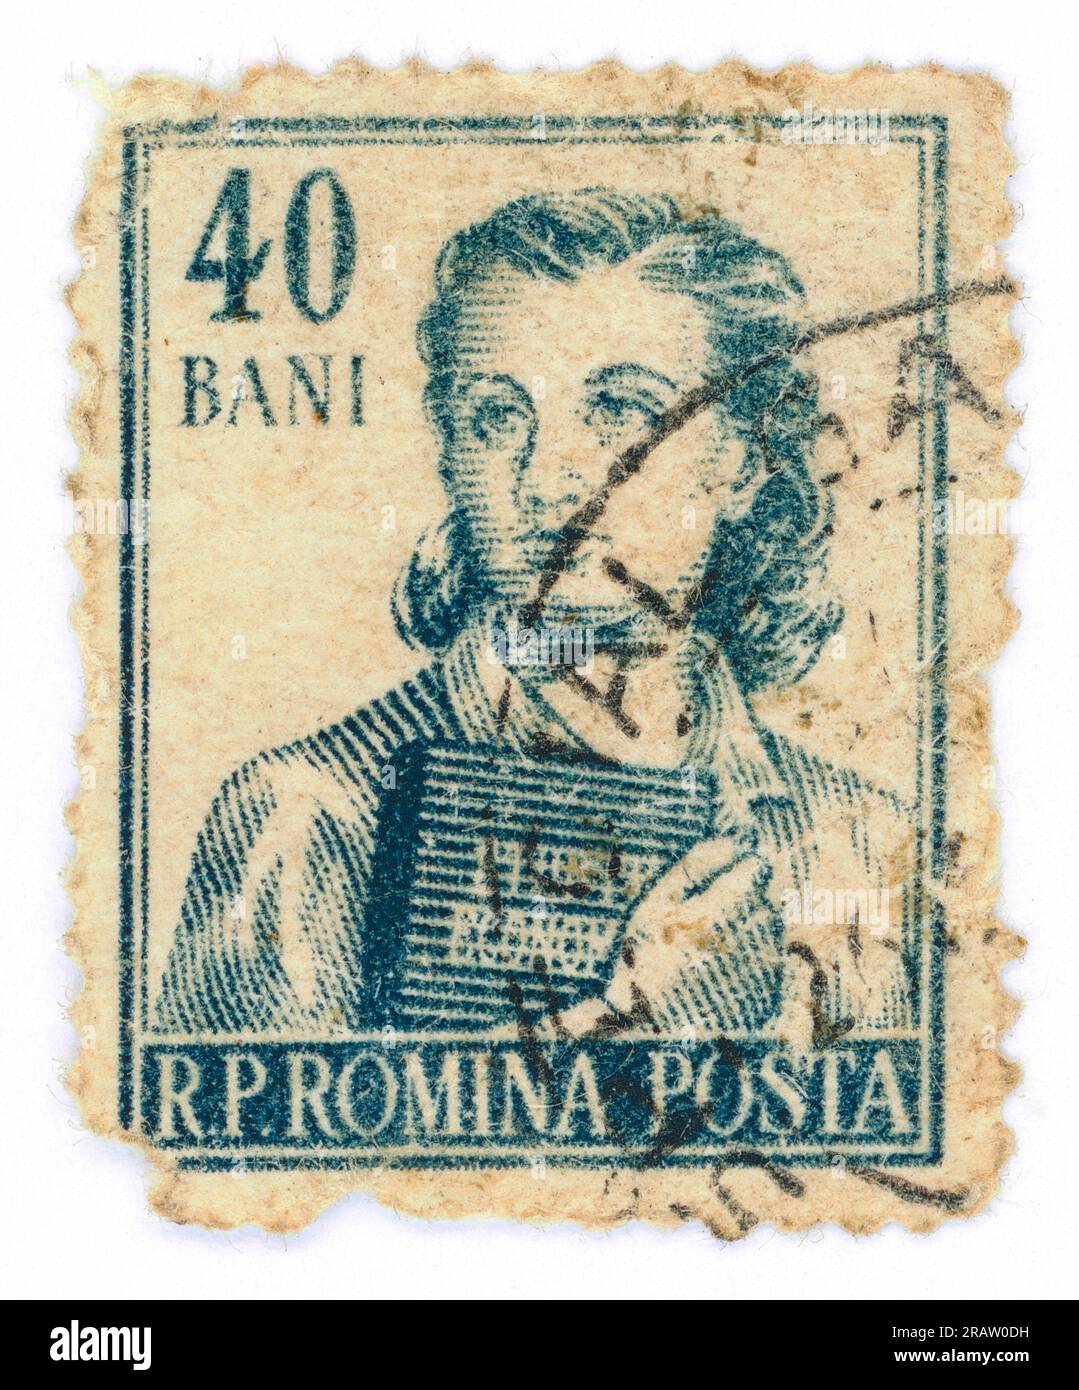 Francobollo emesso in Romania nel 1955: Una studentessa di economia (serie Occupations). Valore nominale: 40 bani (40 divieti rumeni, 100 divieti sono 1 leu). Foto Stock